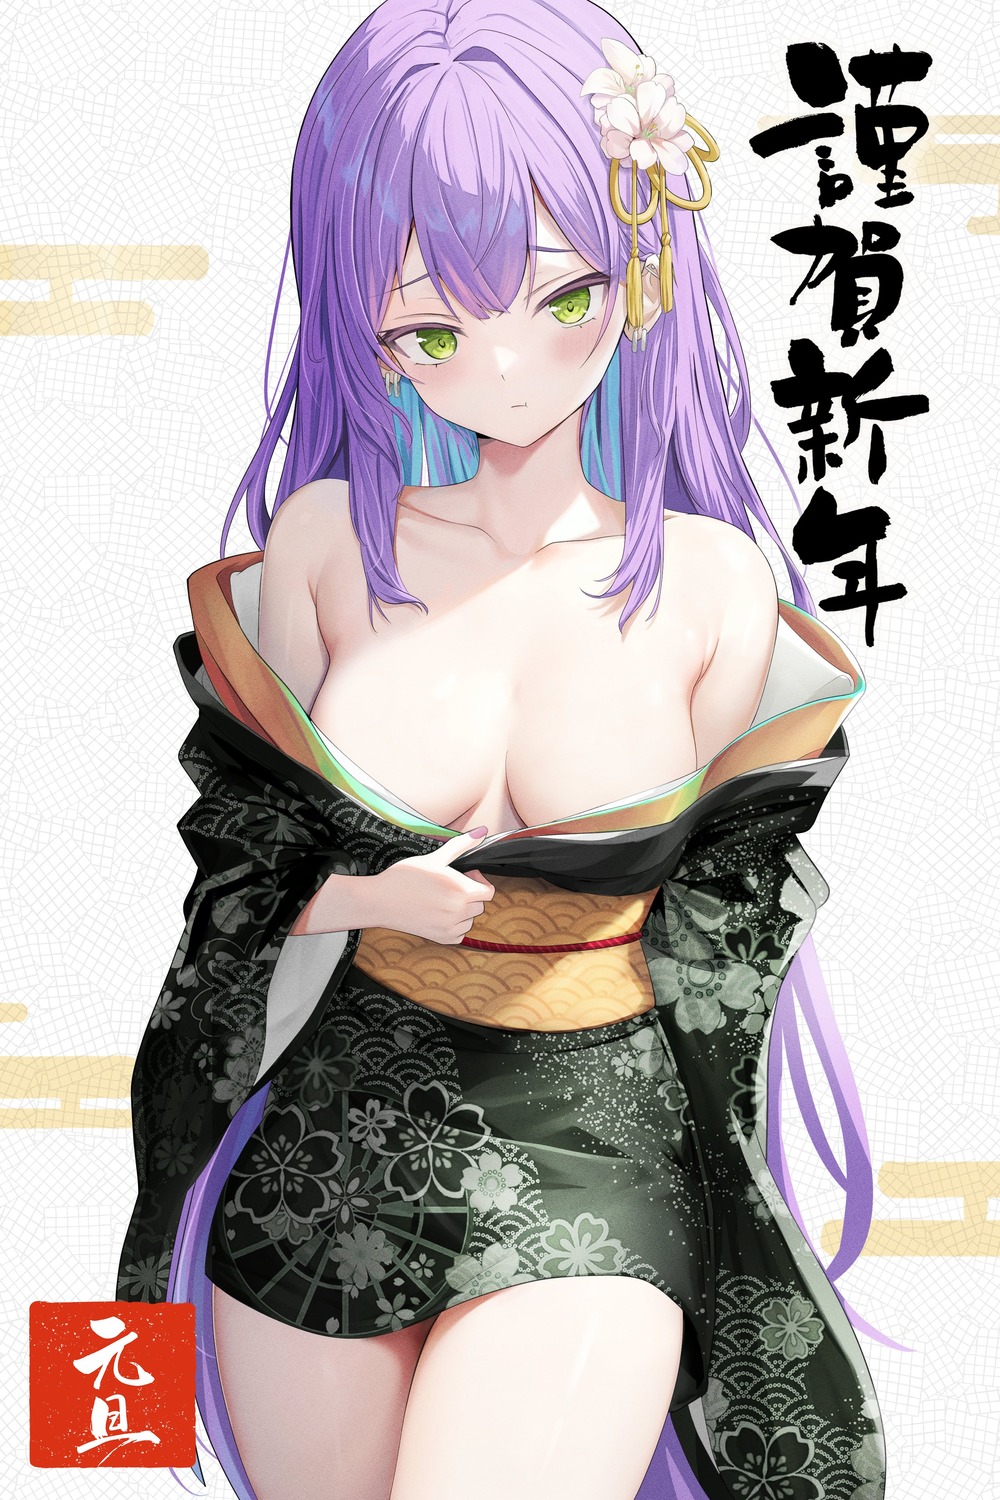 hololive kimono nekonosuke no_bra open_shirt tokoyami_towa undressing